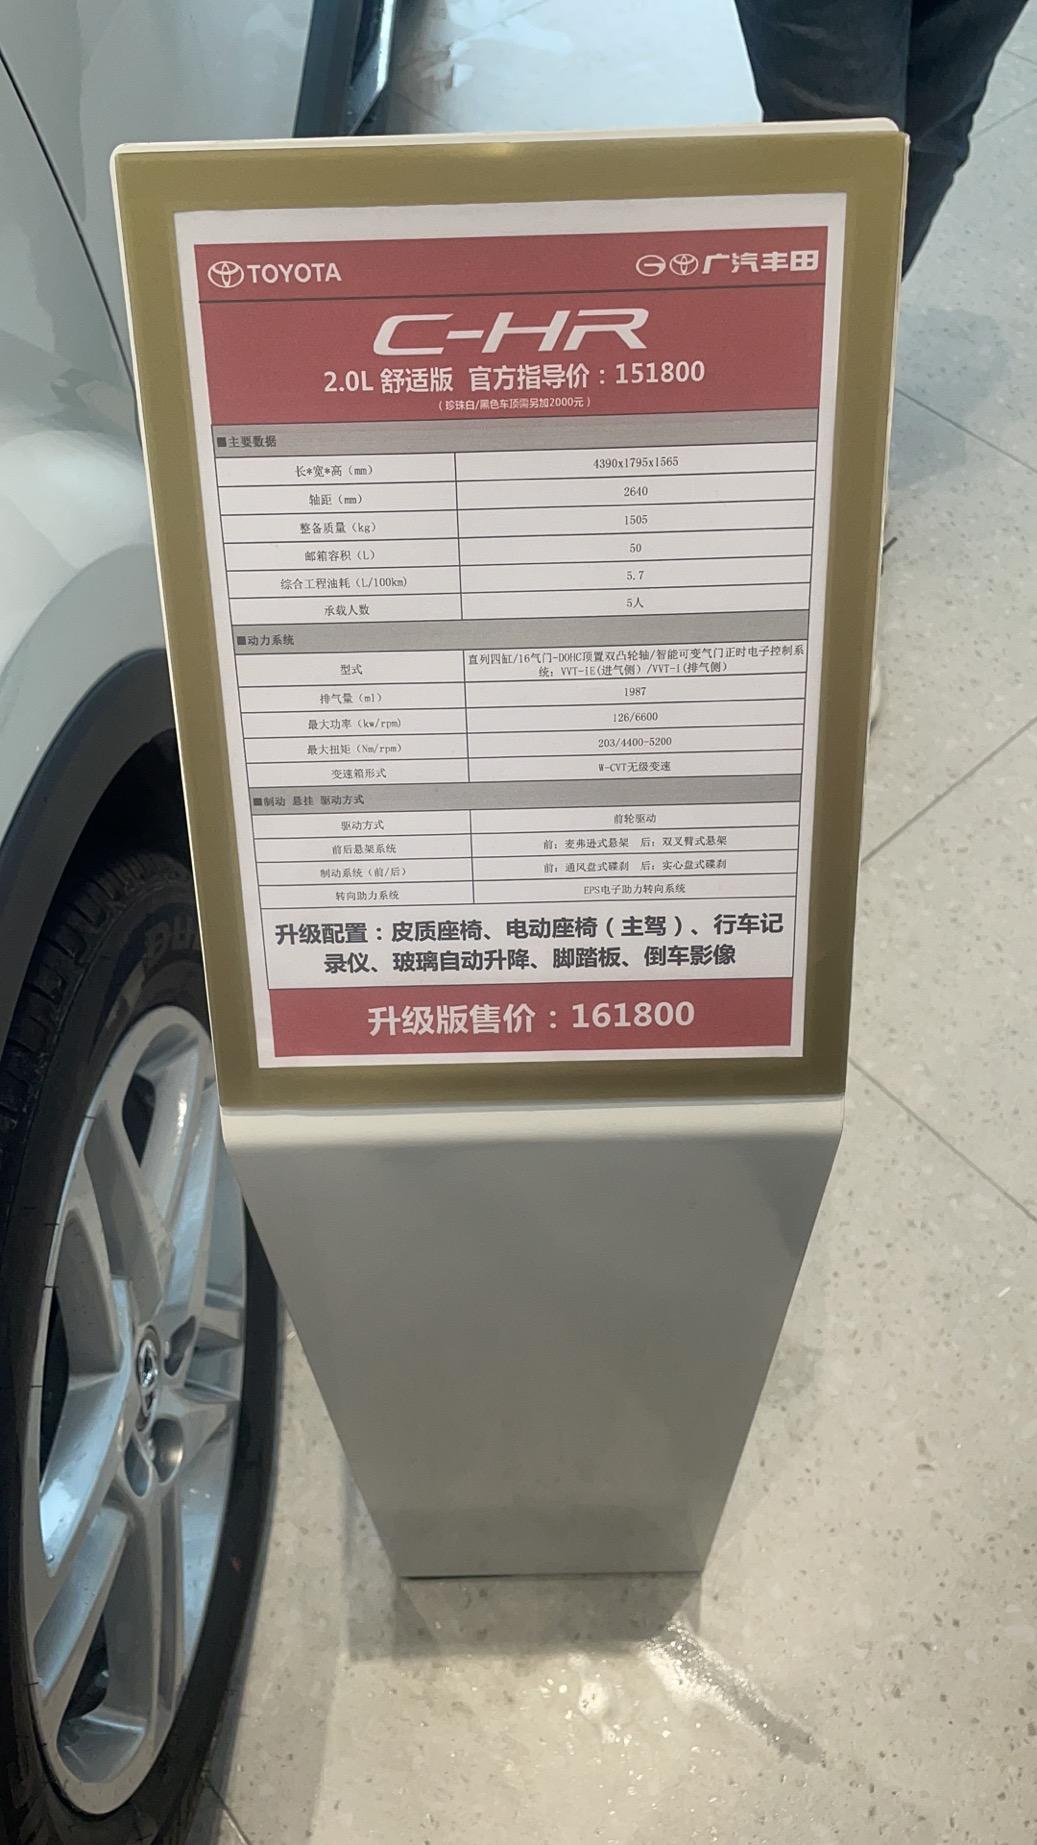 丰田C-HR 升级配置后裸车最底价能多少成交？4s店只优惠2万。。